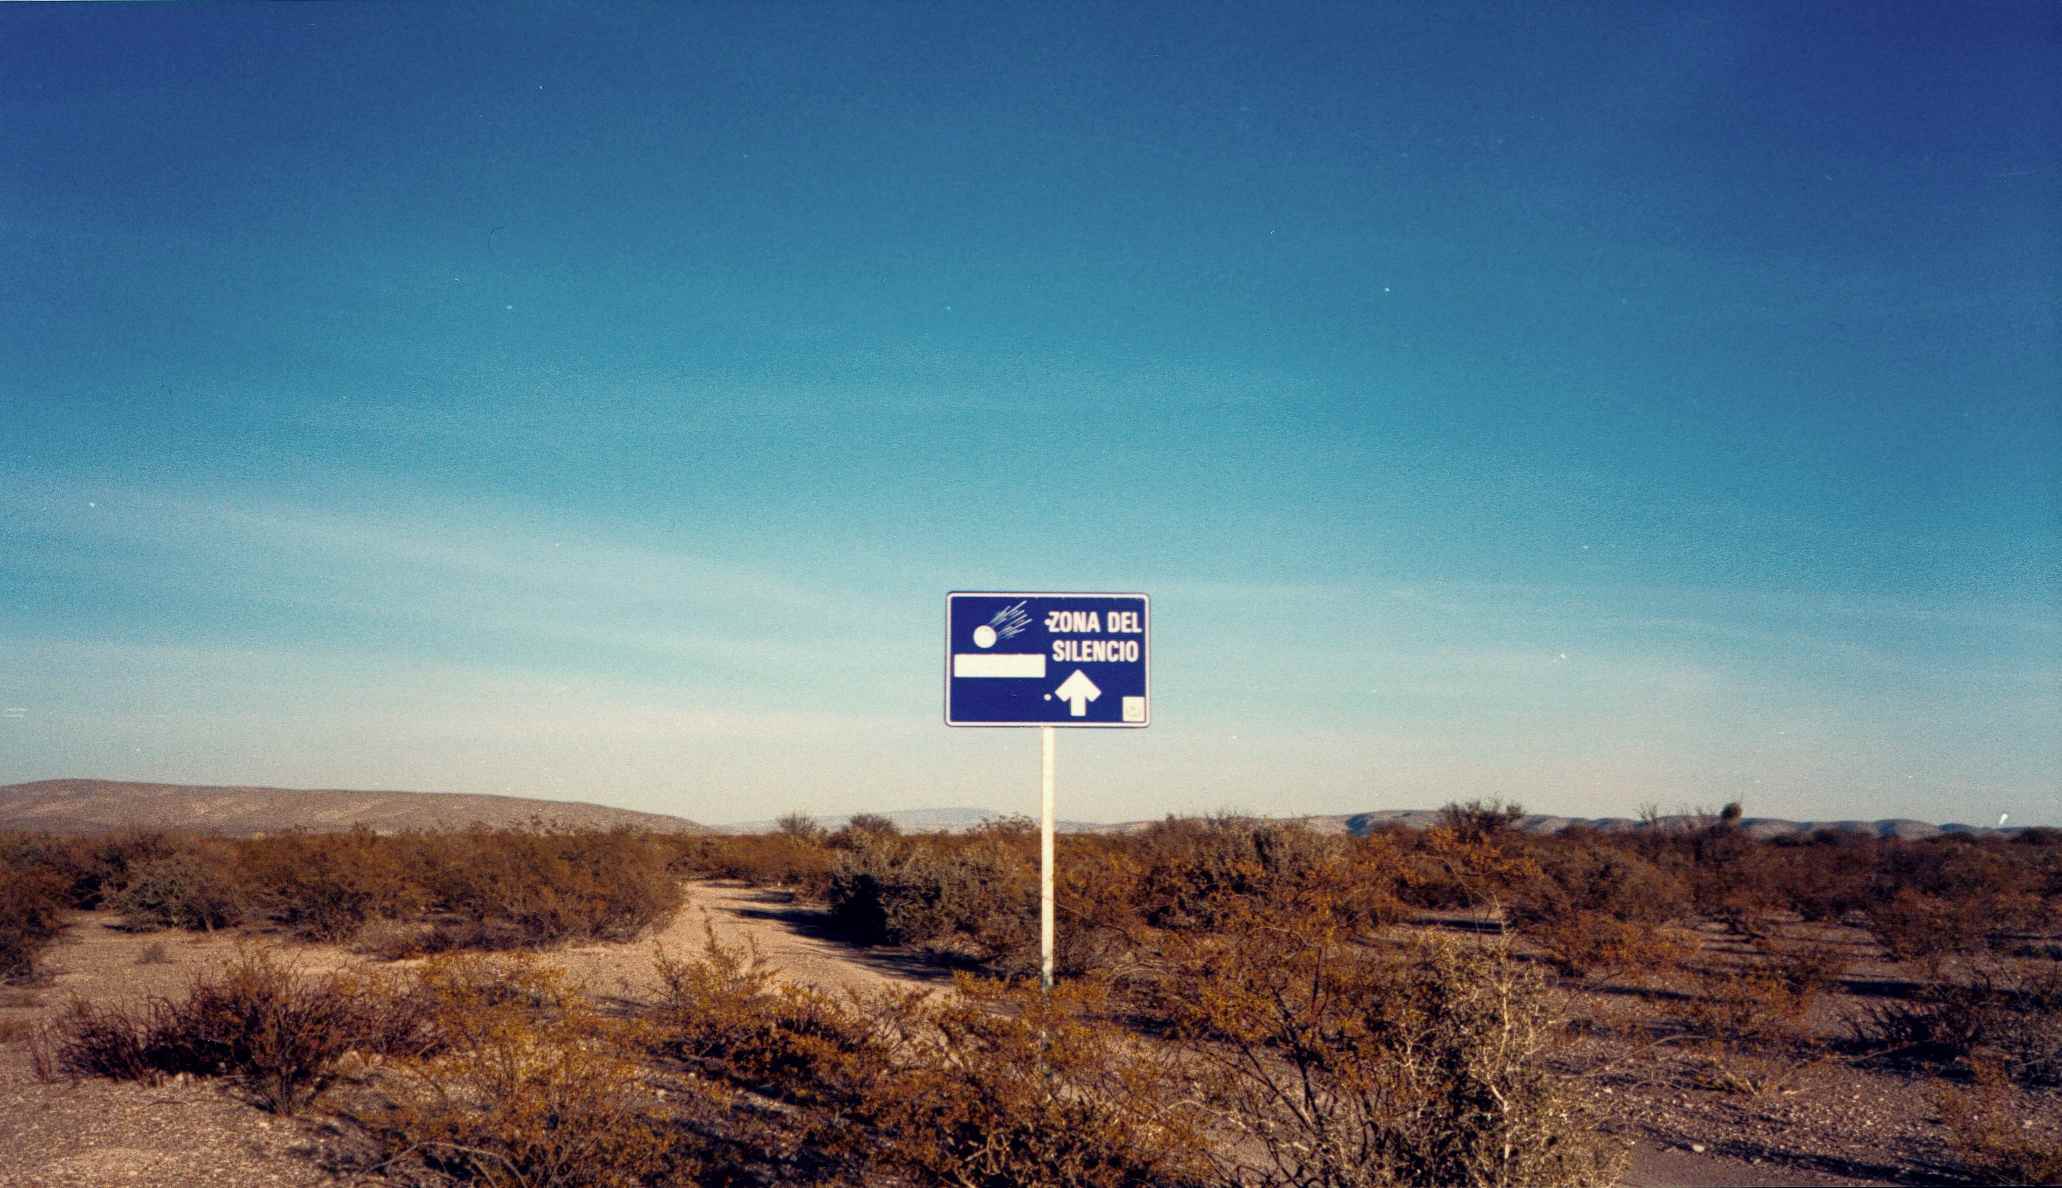 Zona de silêncio, Zona del Silencio, deserto de Chihuahua, norte do México